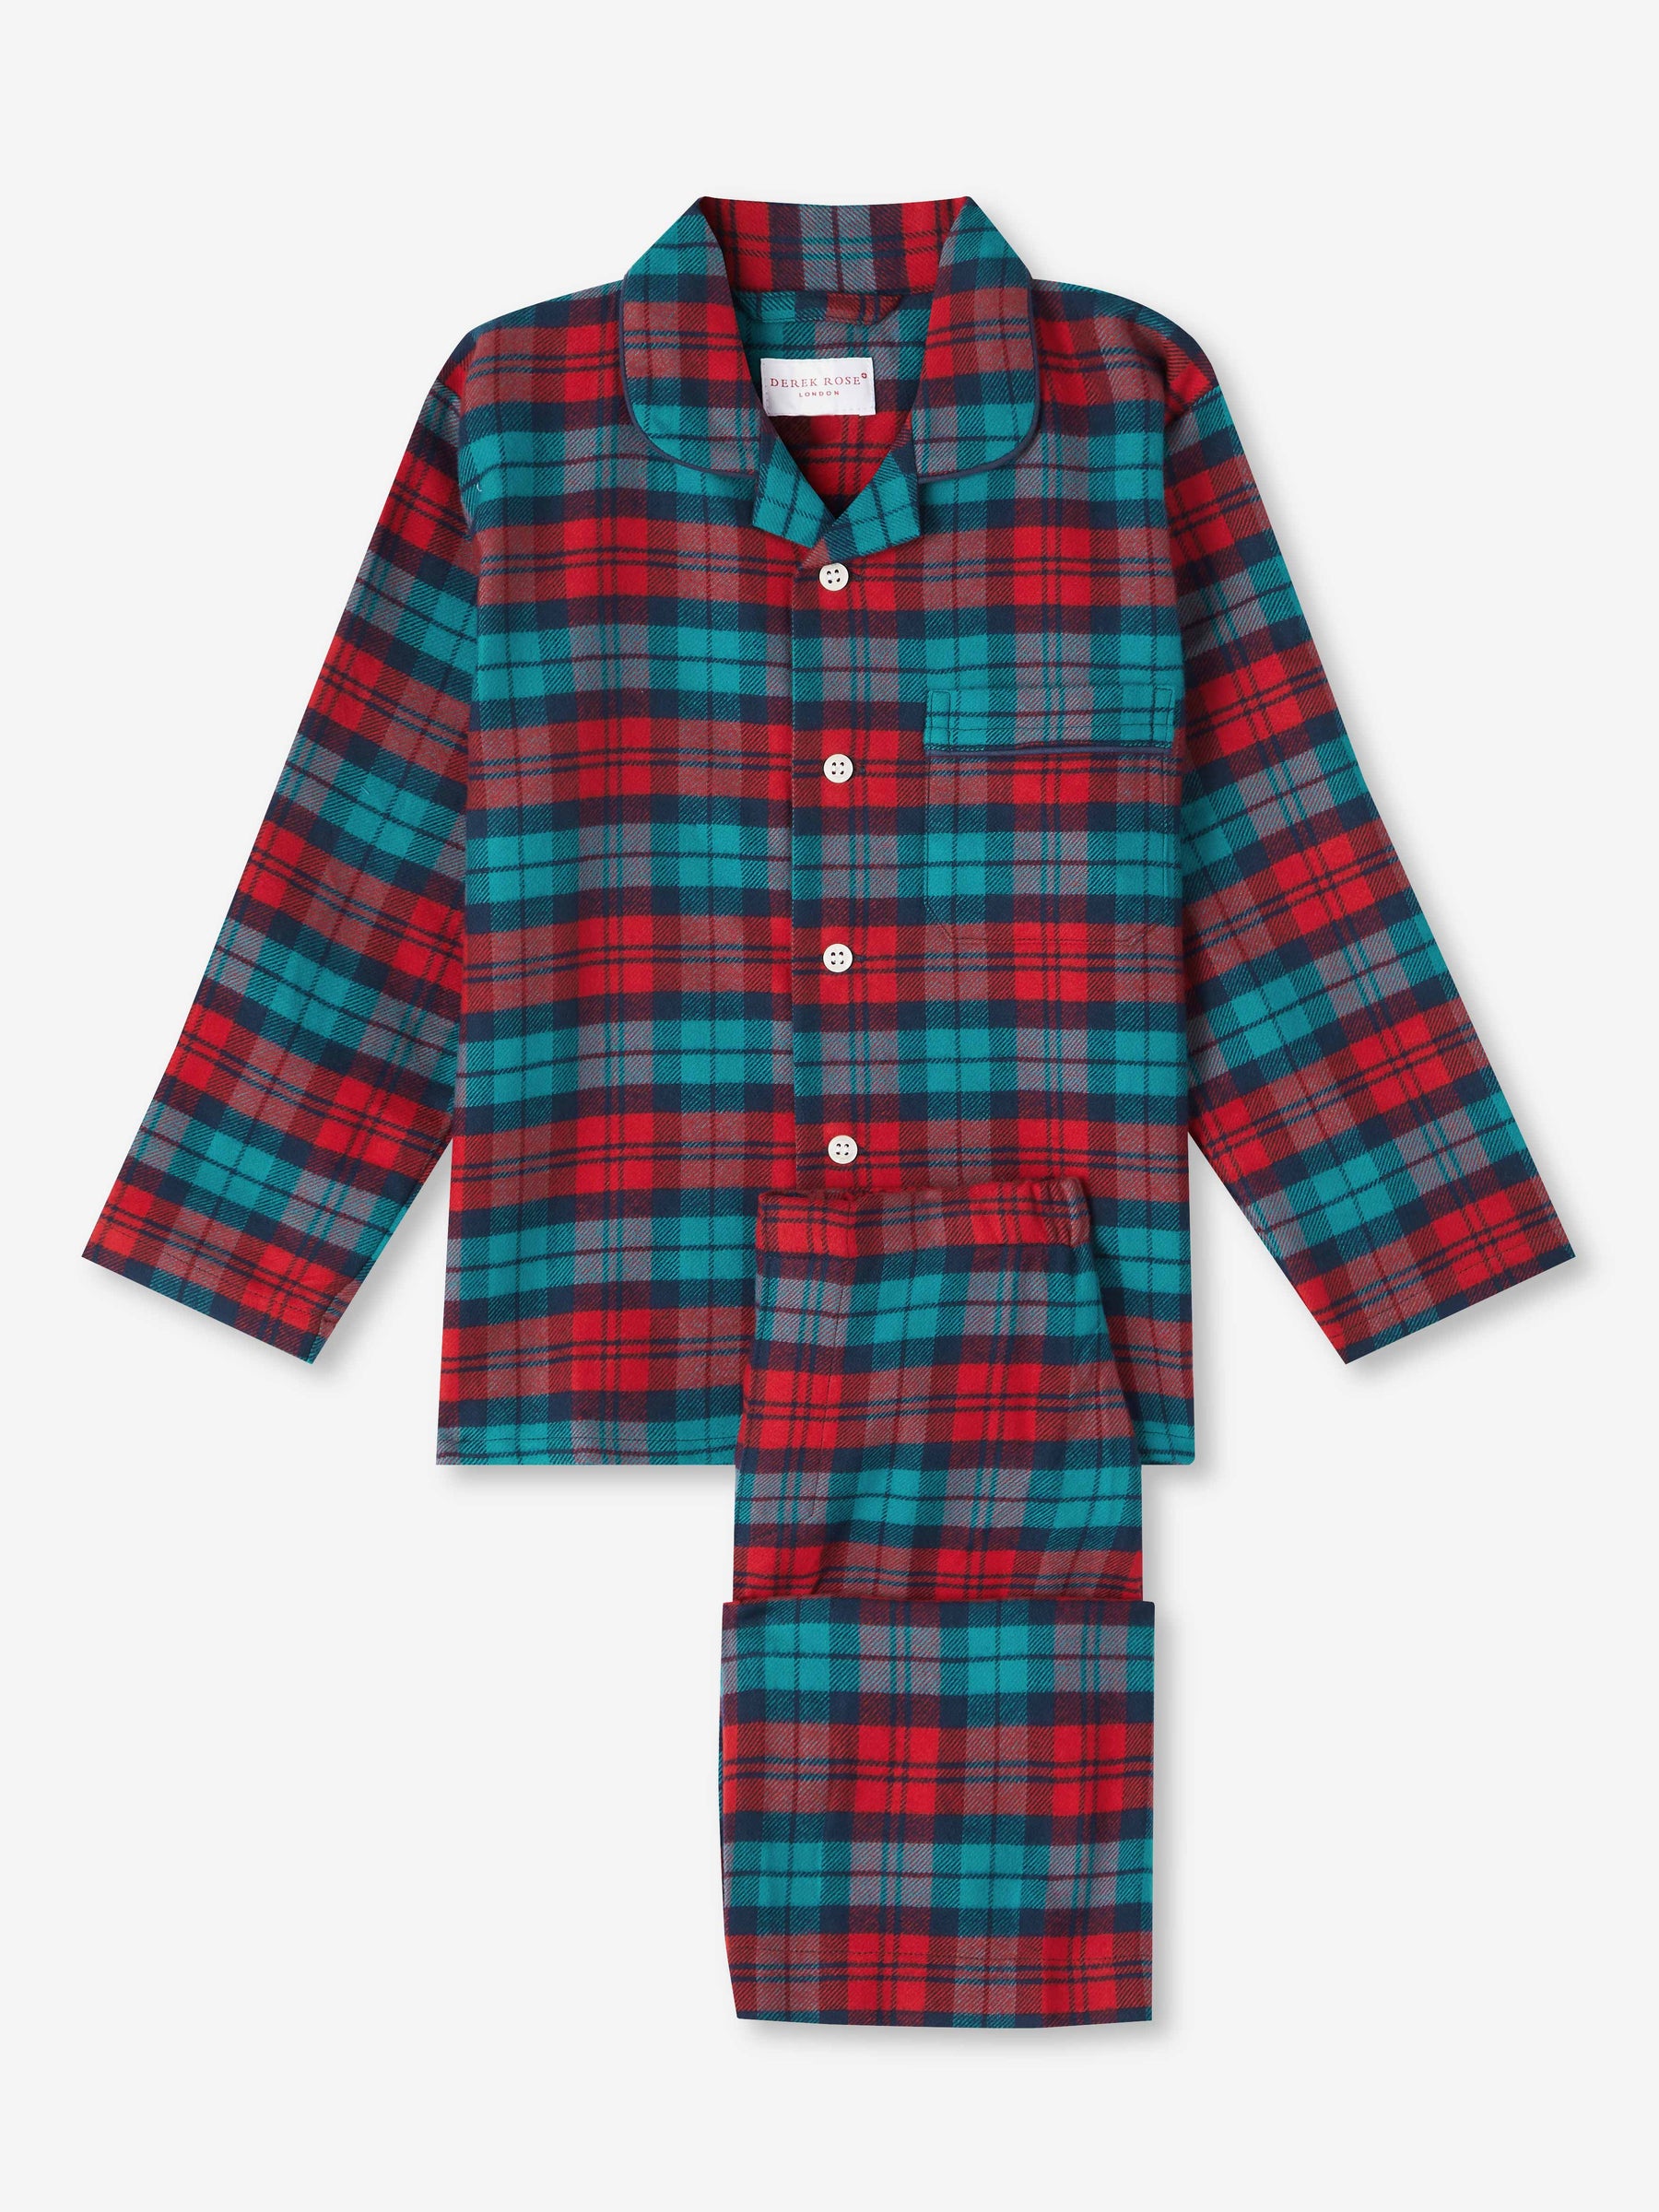 Kids' Pyjamas Kelburn 26 Brushed Cotton Multi